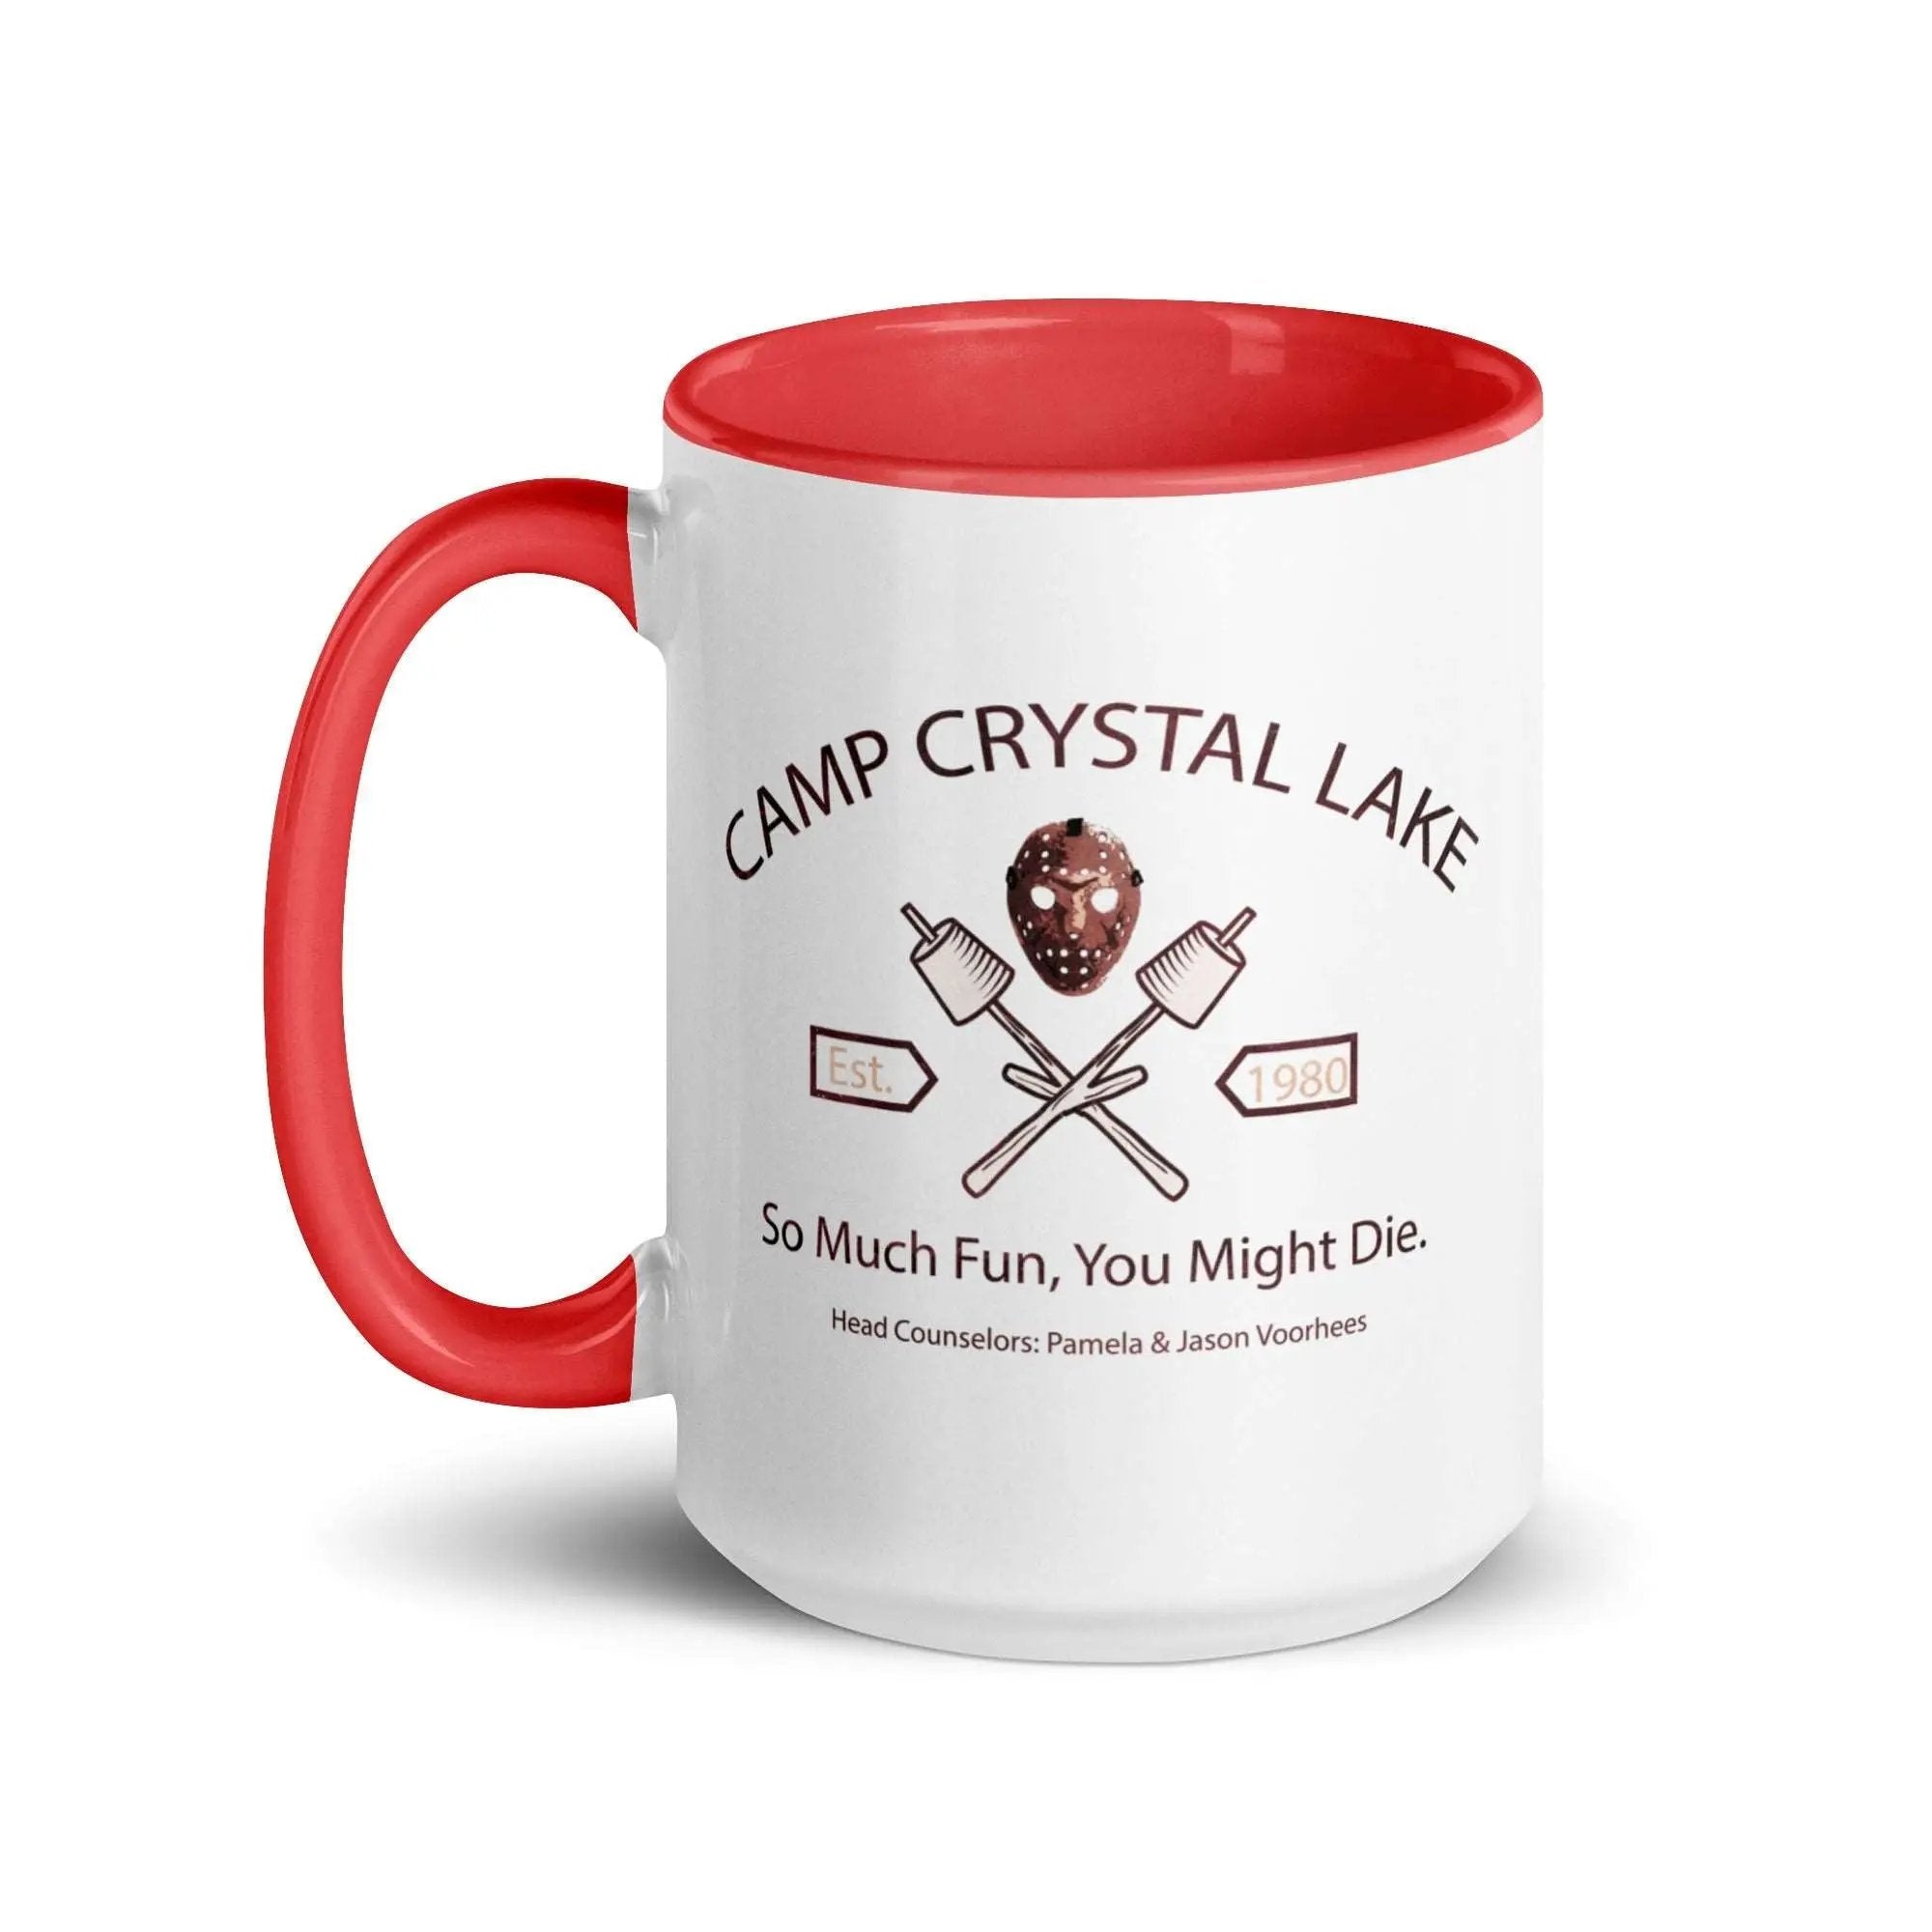 Camp Crystal Lake Mug with Color Inside